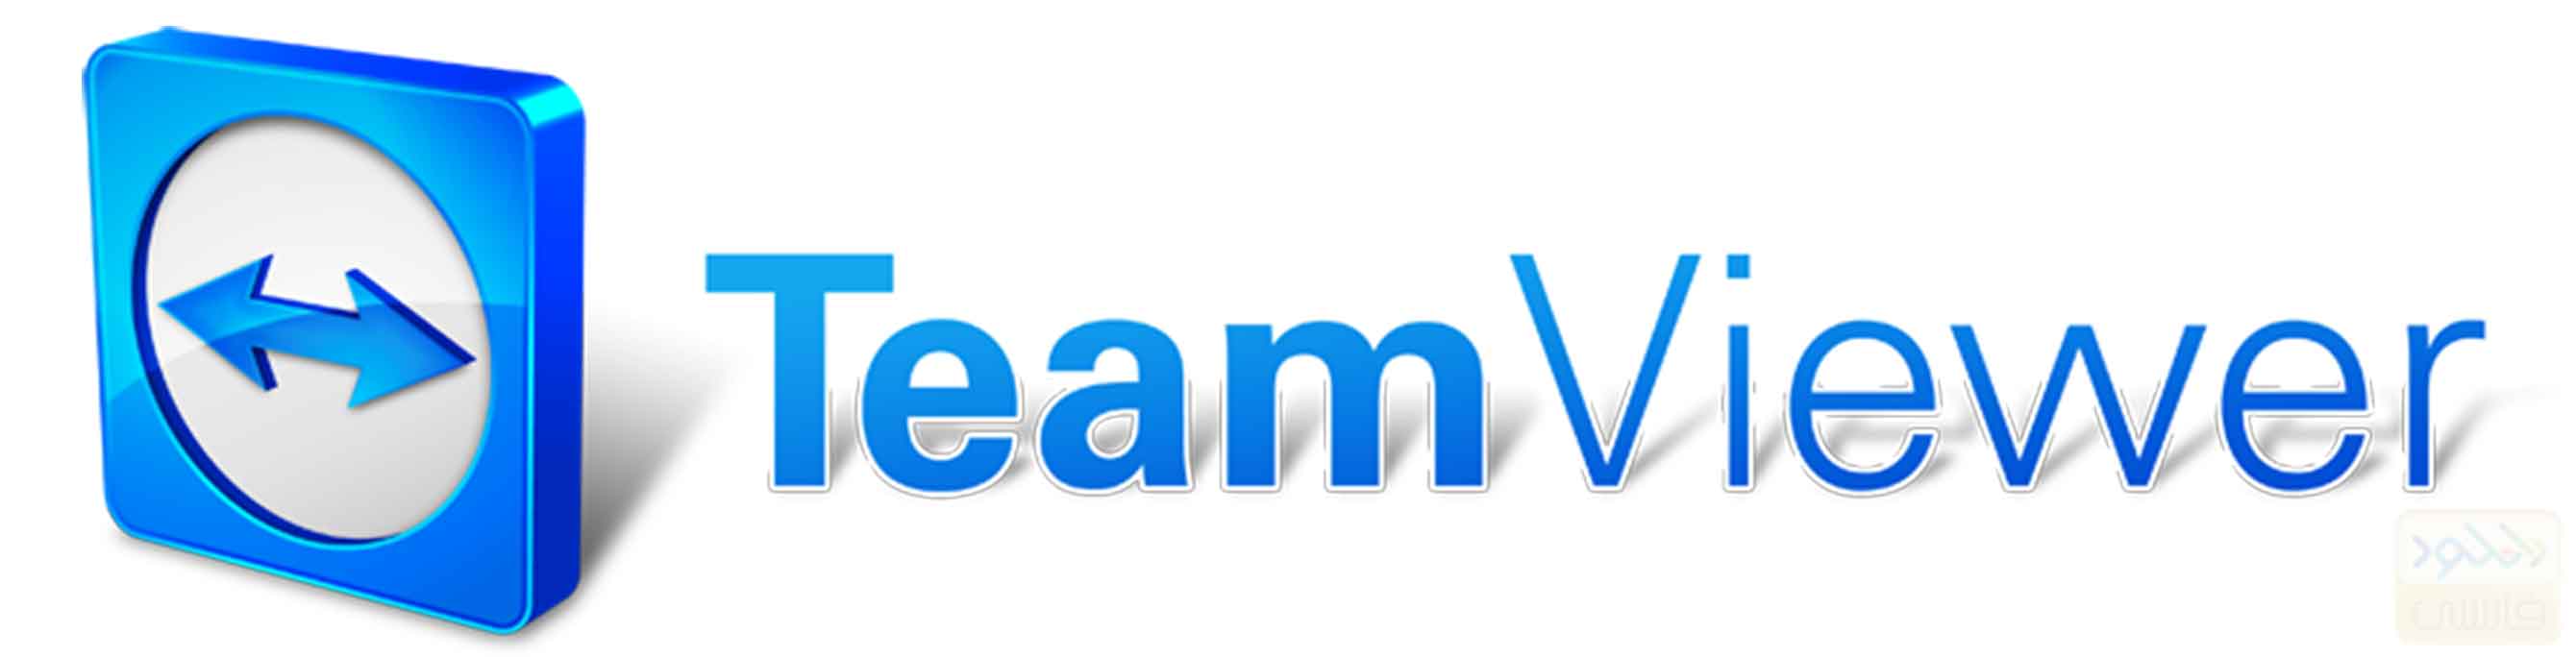 دانلود نرم افزار TeamViewer 12.0.69779 برای آیفون و آیپد